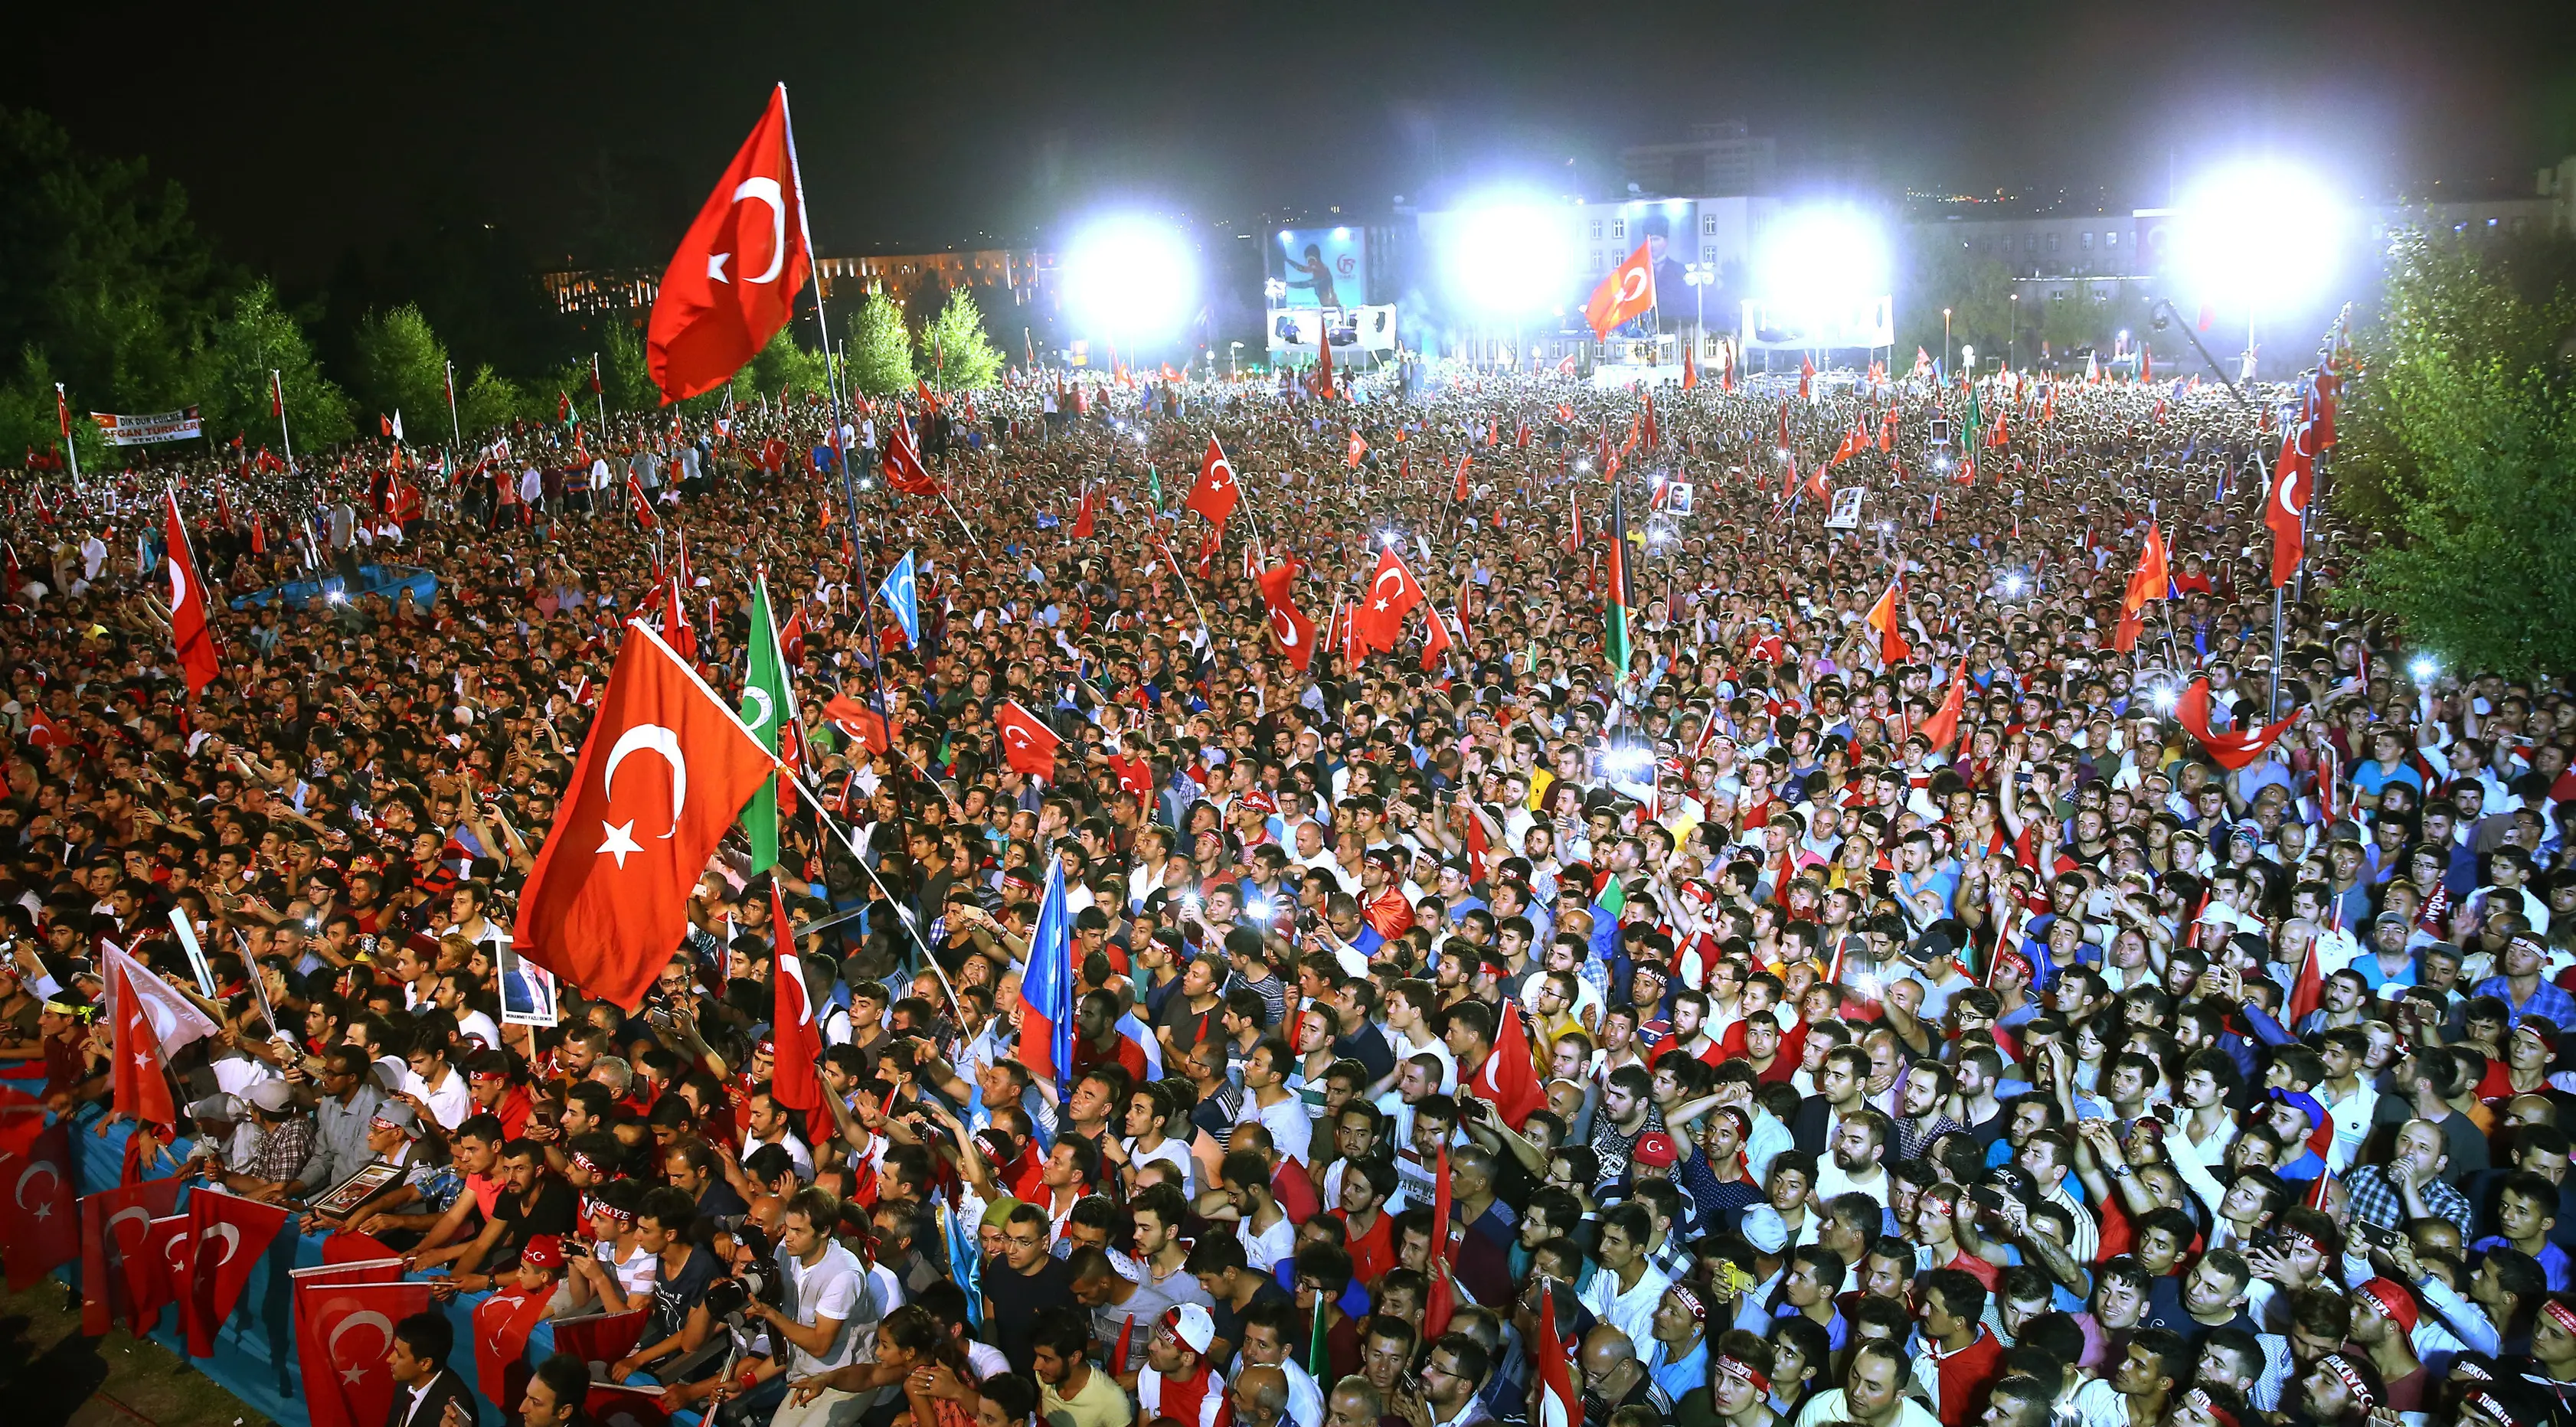 Ribuan orang berkumpul mengikuti upacara memperingati satu tahun gagalnya kudeta di Ankara, Turki (15/7). Ribuan massa turun ke jalan sambil membawa bendera Turki untuk mendengarkan pidato Presiden Erdogan. (Presidency Press Service via AP, Pool)